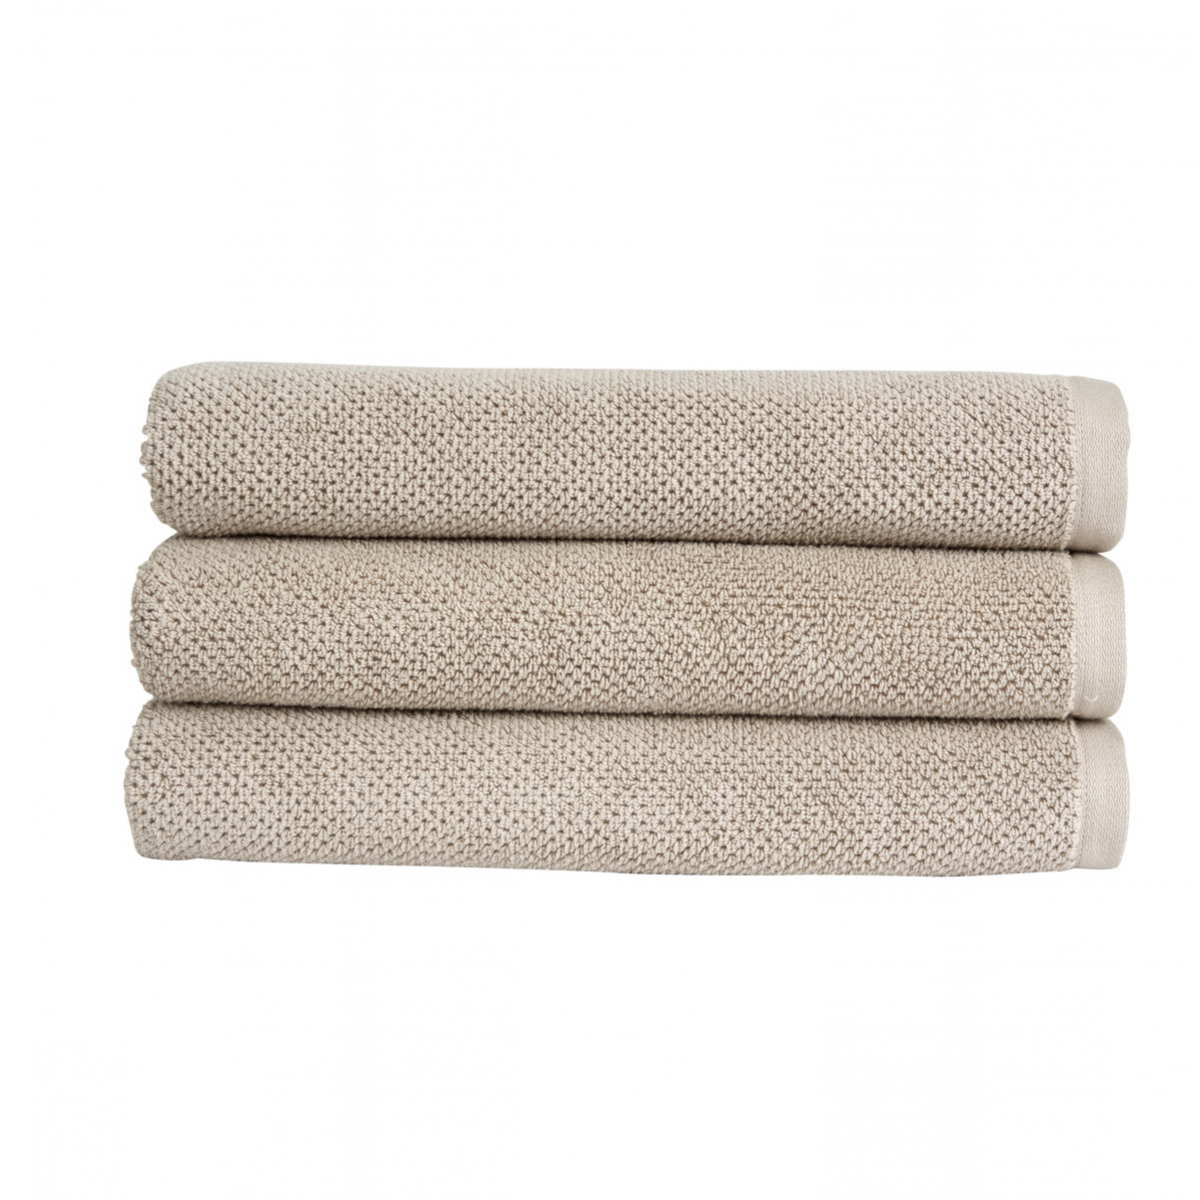 Christy Brixton 600gsm Cotton Towels - Pebble